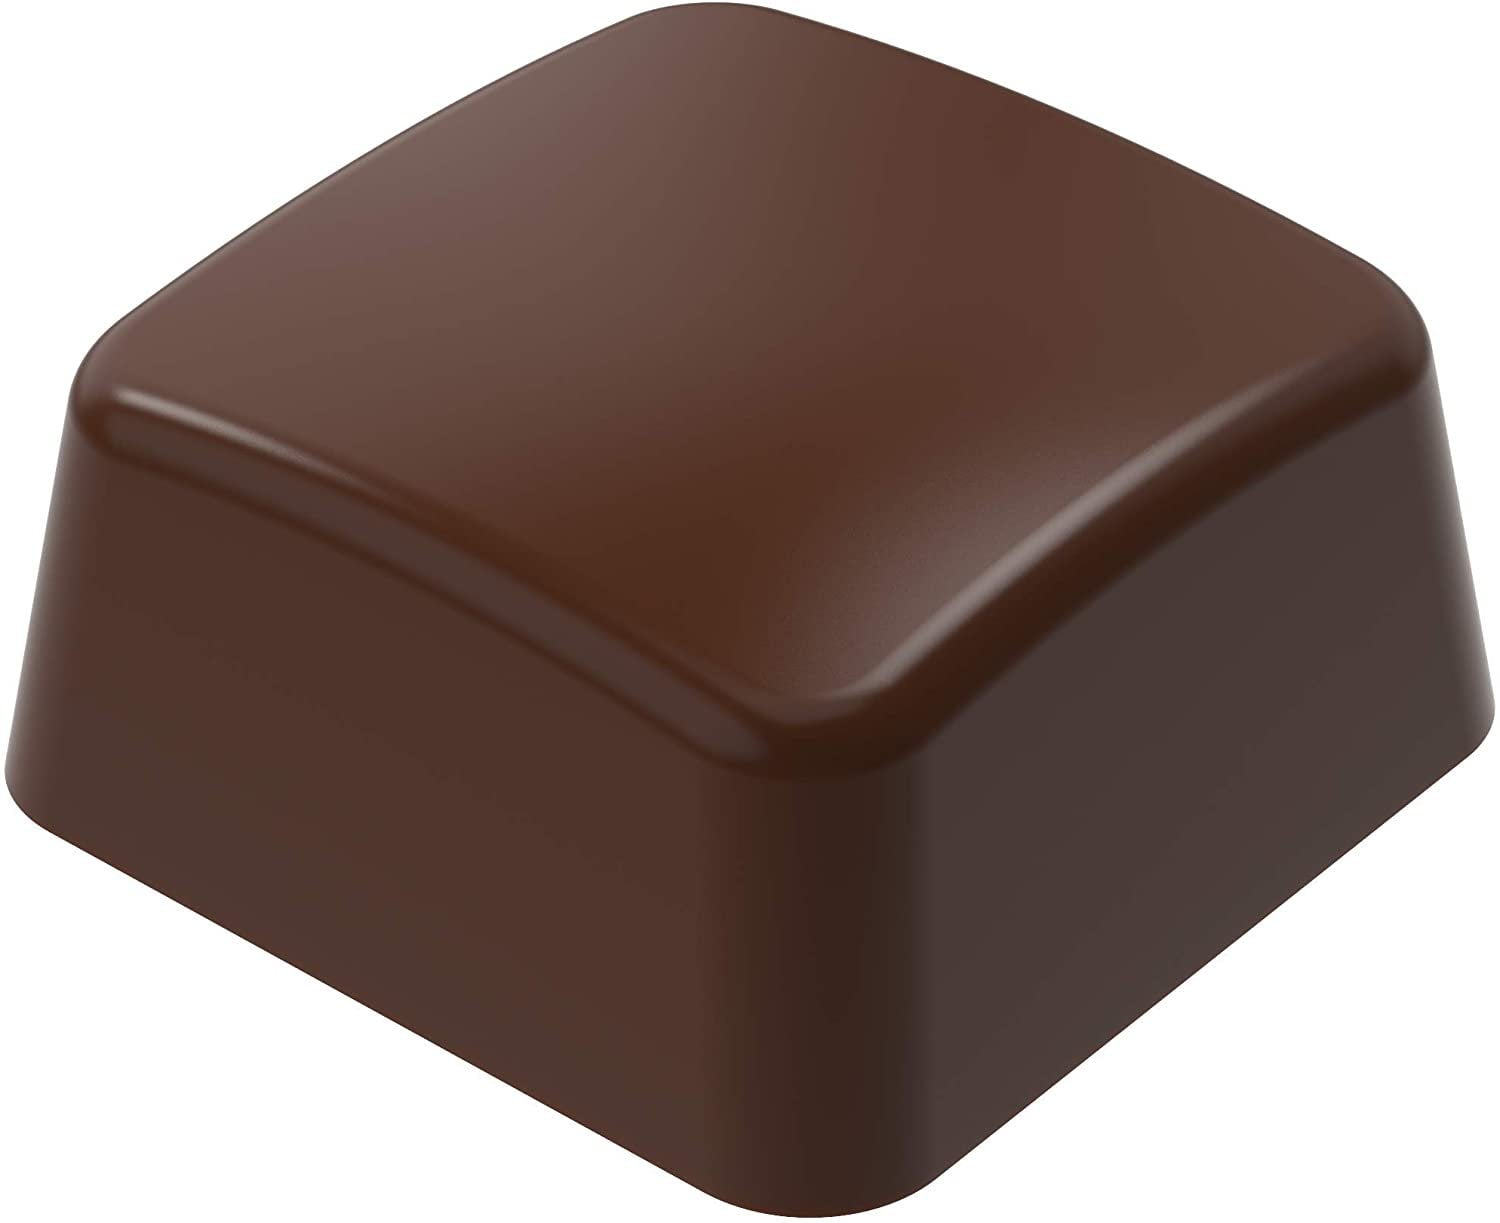 CHOCOLATE BAR MOULD 3 x 6 - 132 gr - Savy Goiseau